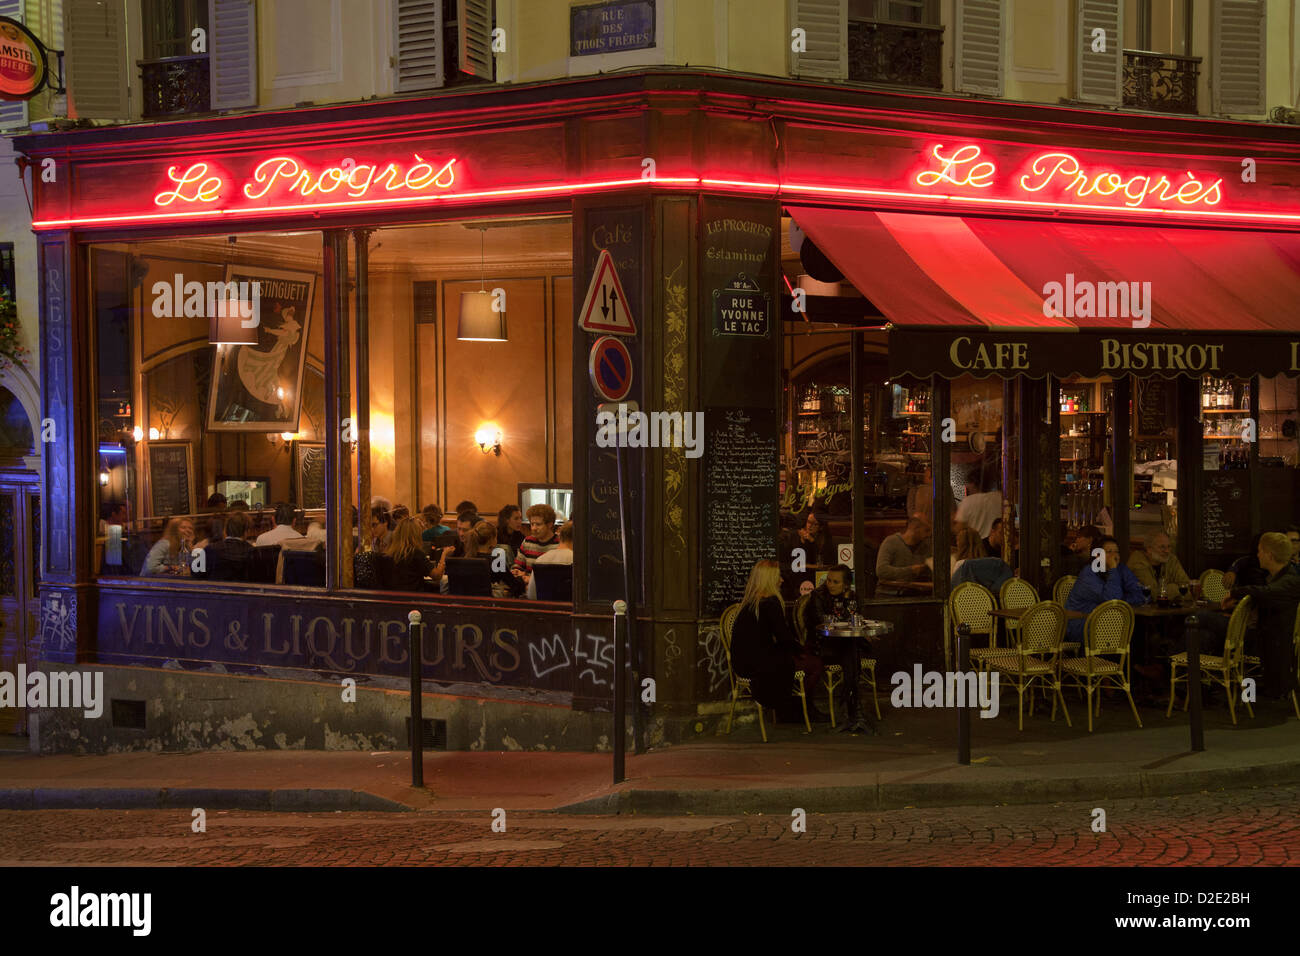 pavement café Le Progrès in Montmartre at night Stock Photo